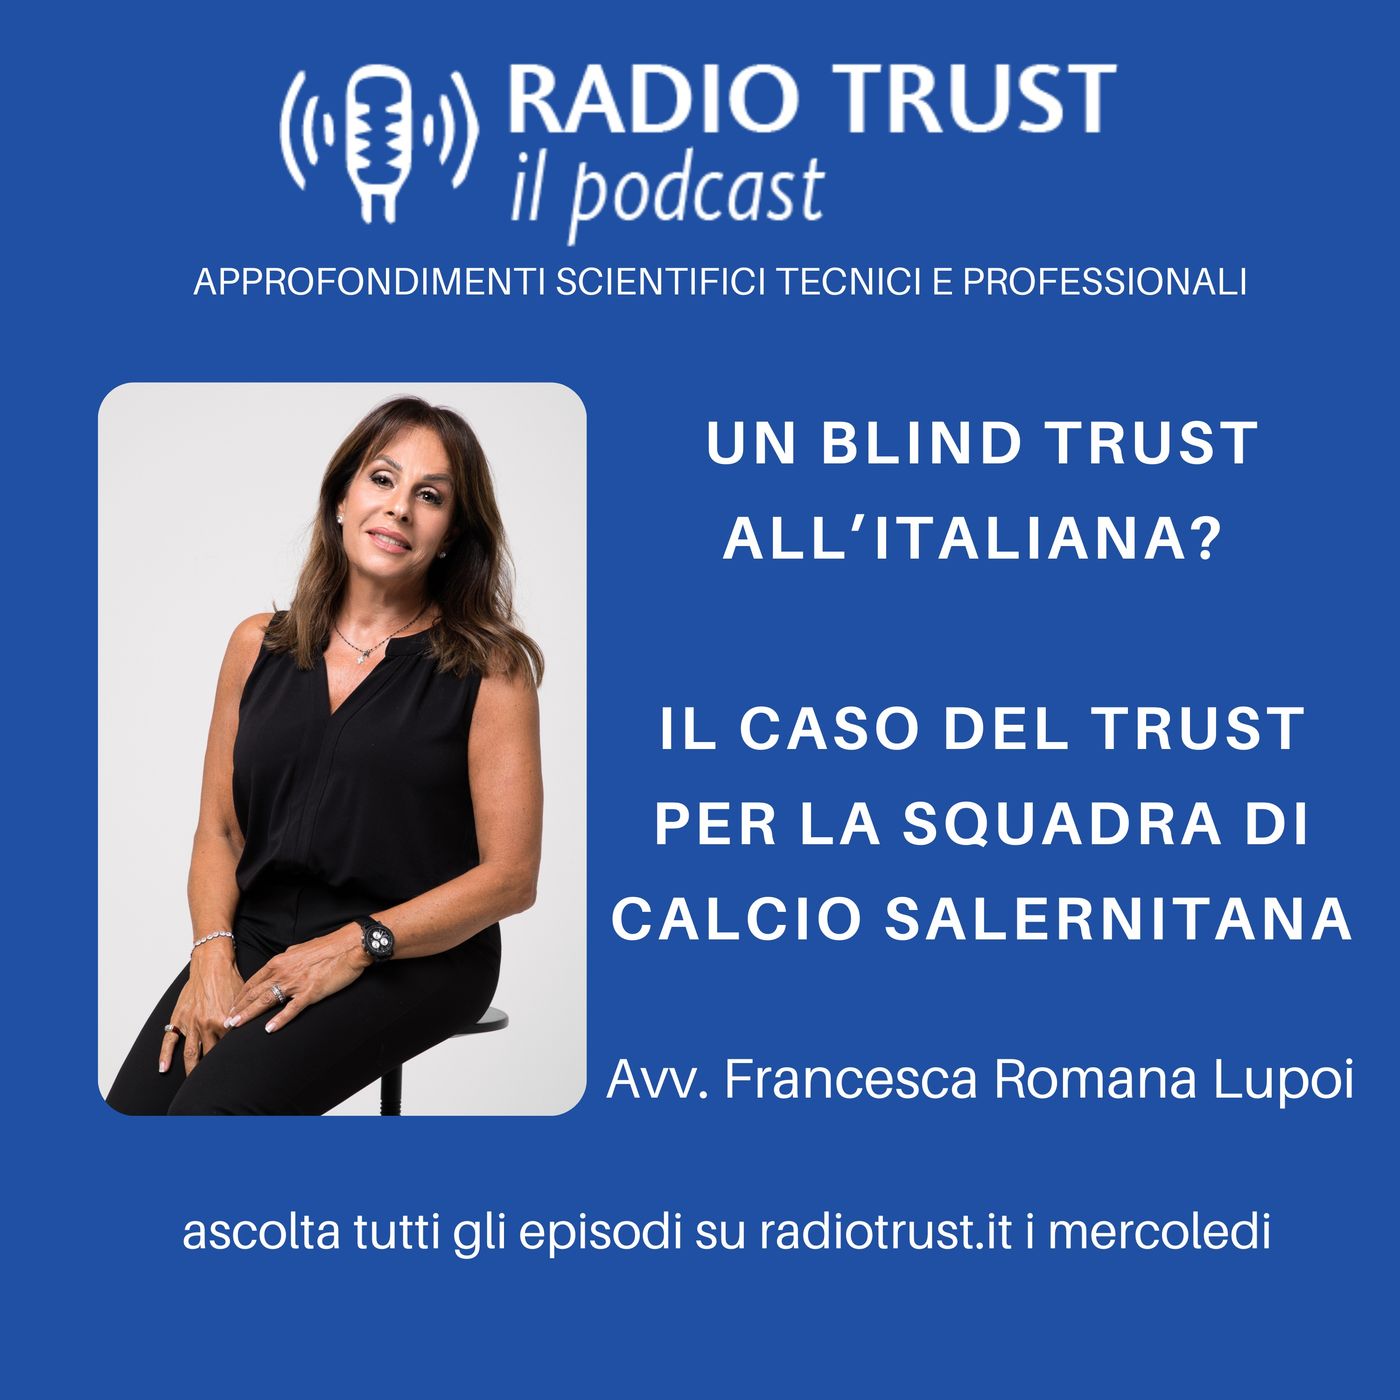 Un blind trust all’italiana Il caso del trust per la squadra di calcio Salernitana - Avv Francesca Romana Lupoi